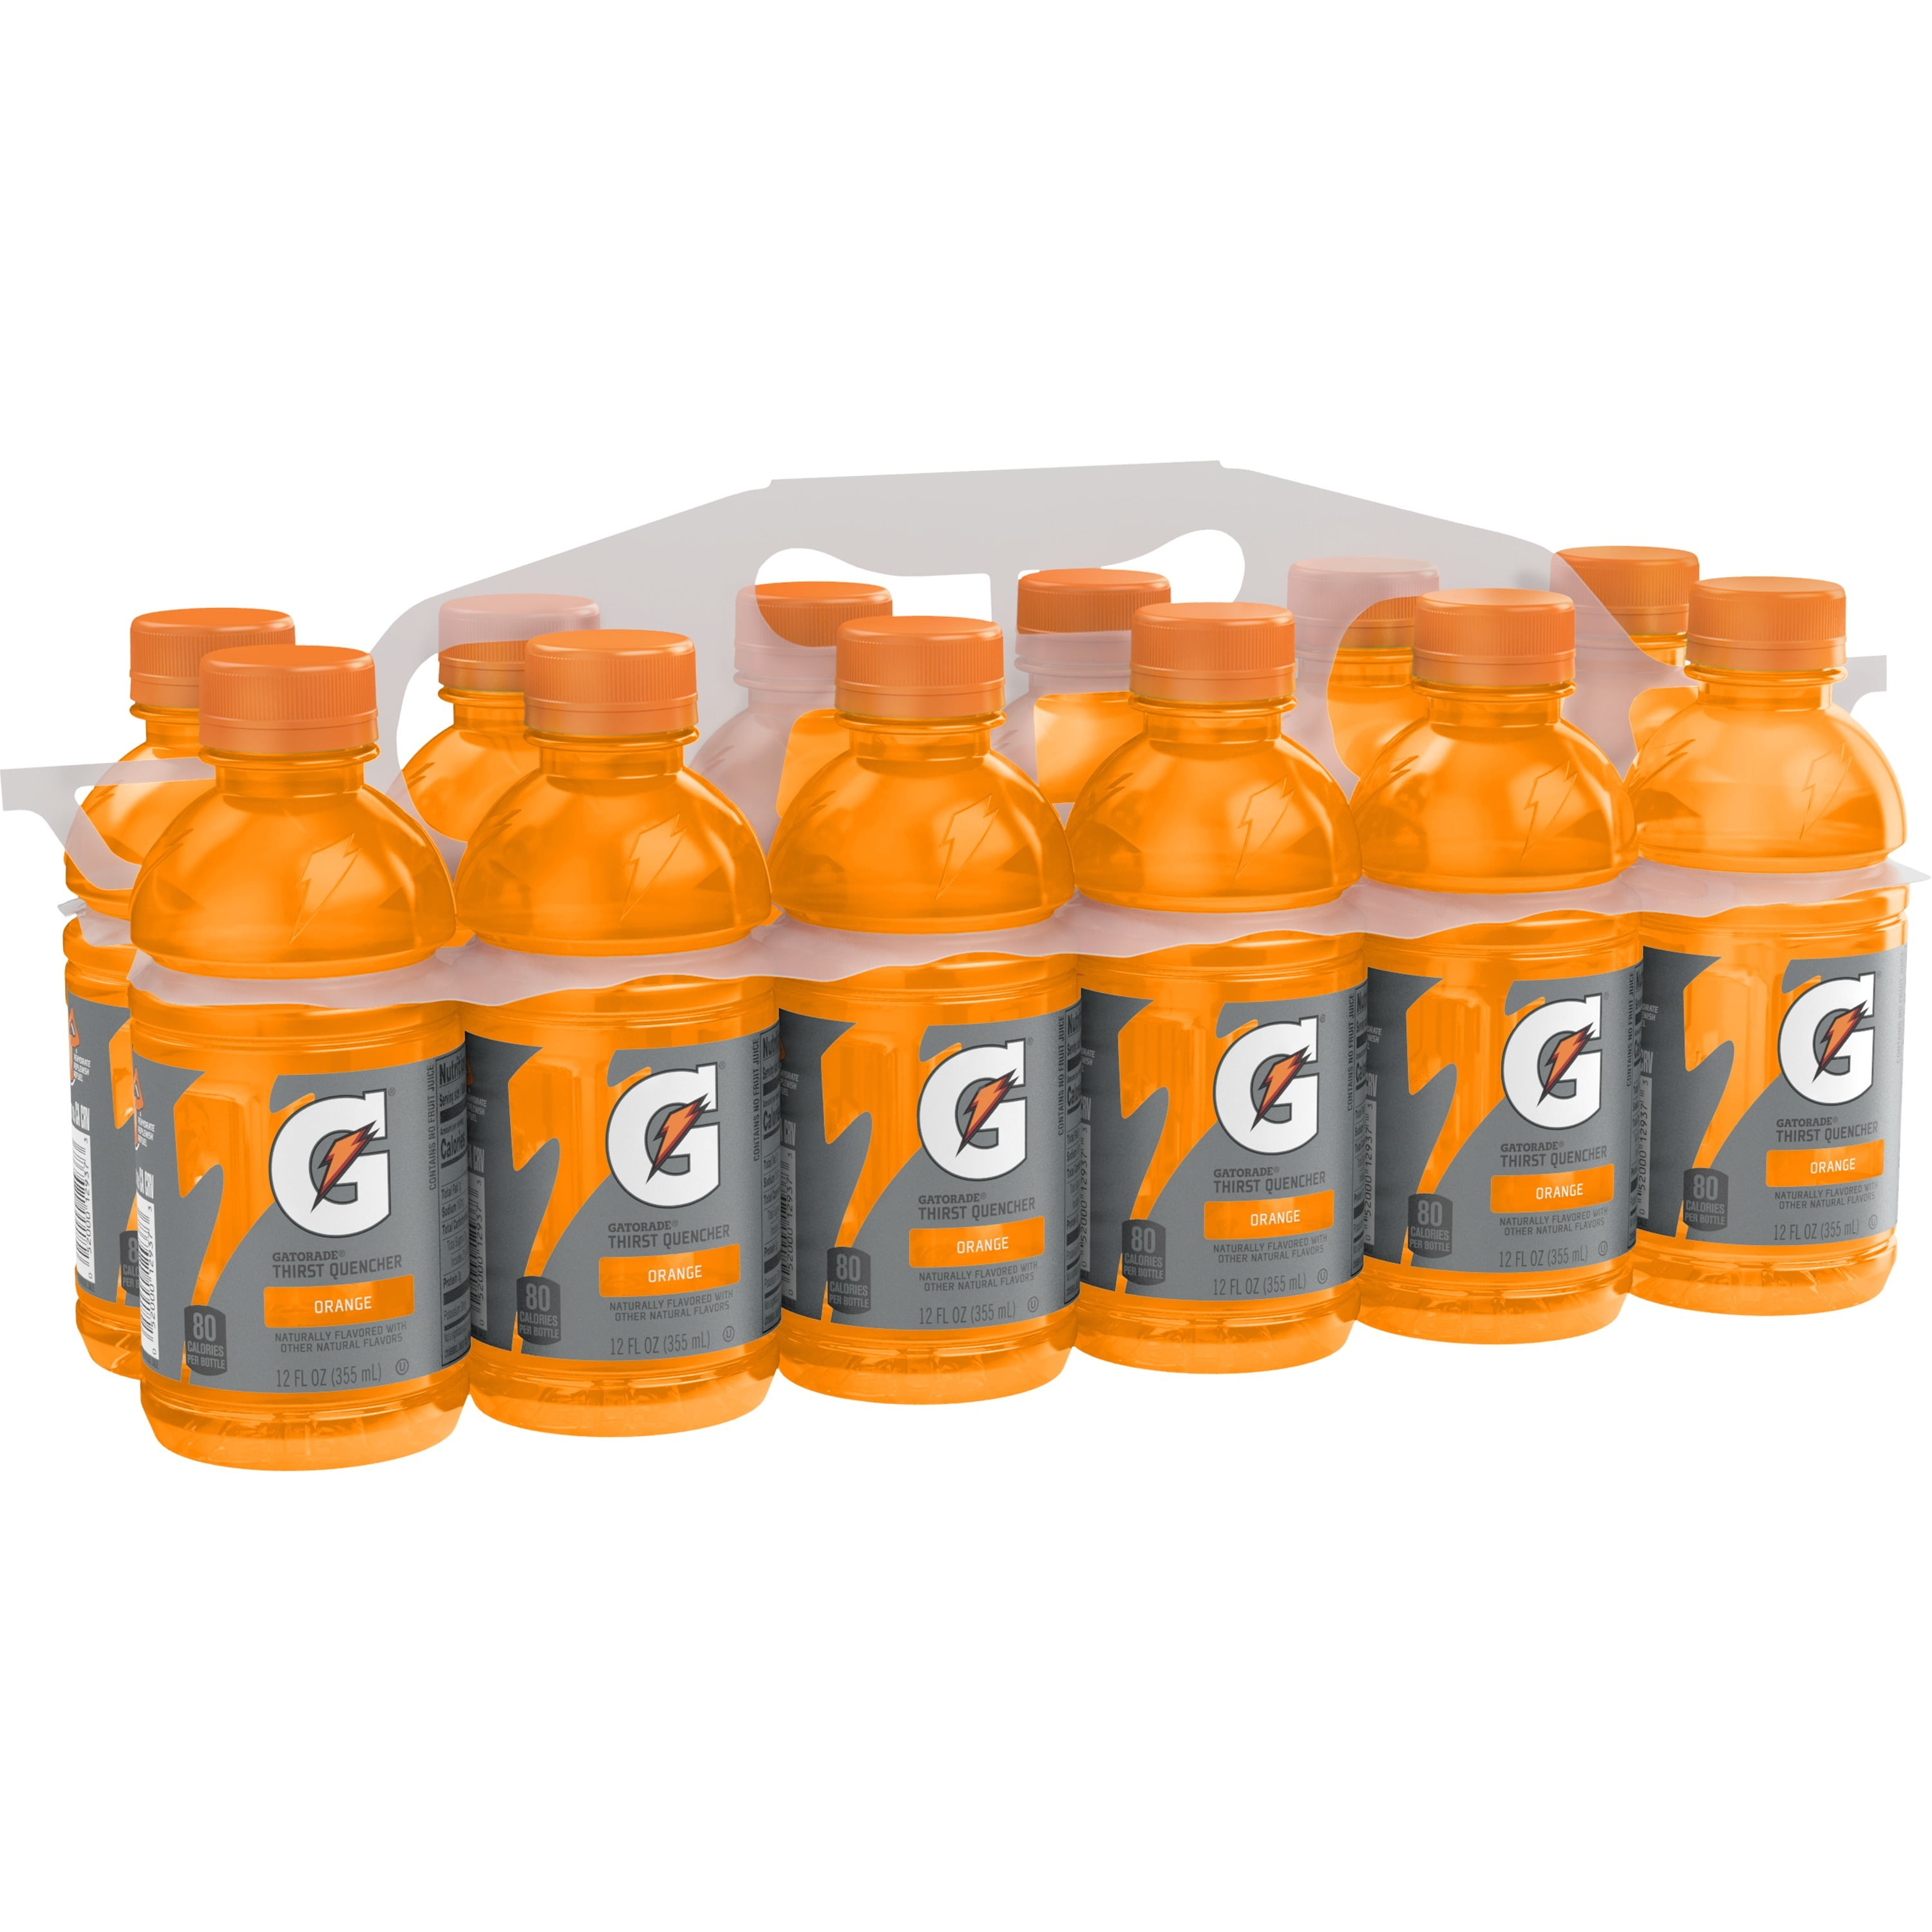 gatorade-orange-thirst-quencher-sports-drink-20-oz-pack-bottles